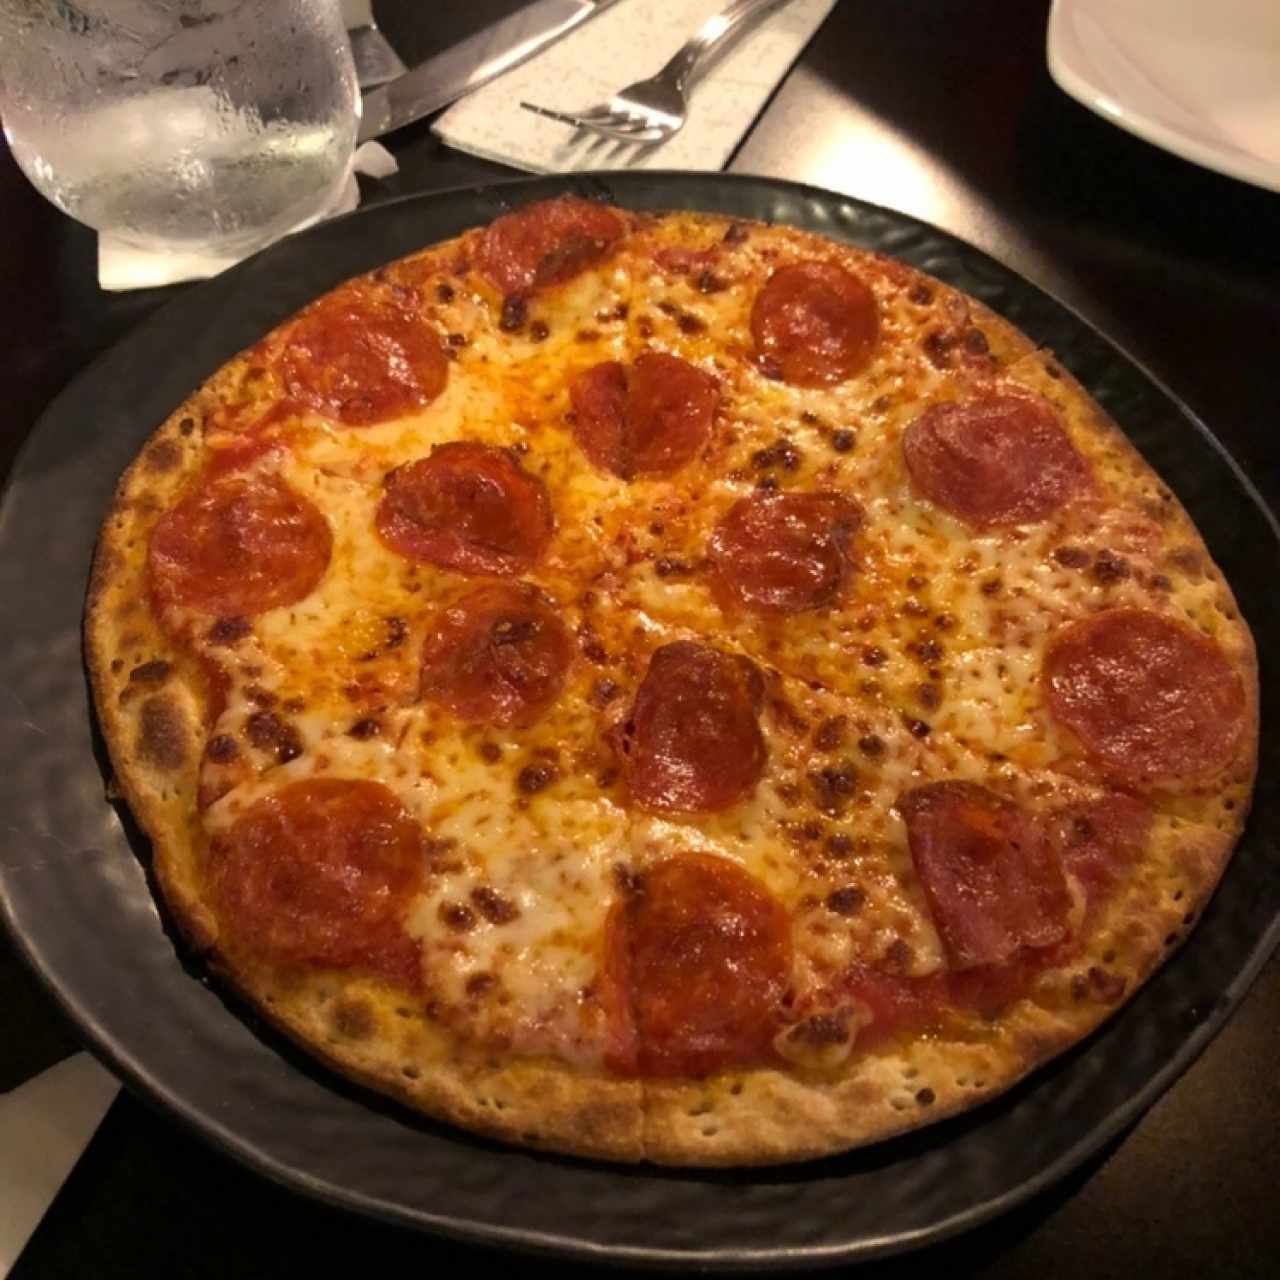 Pizzas 9" - Pepperoni